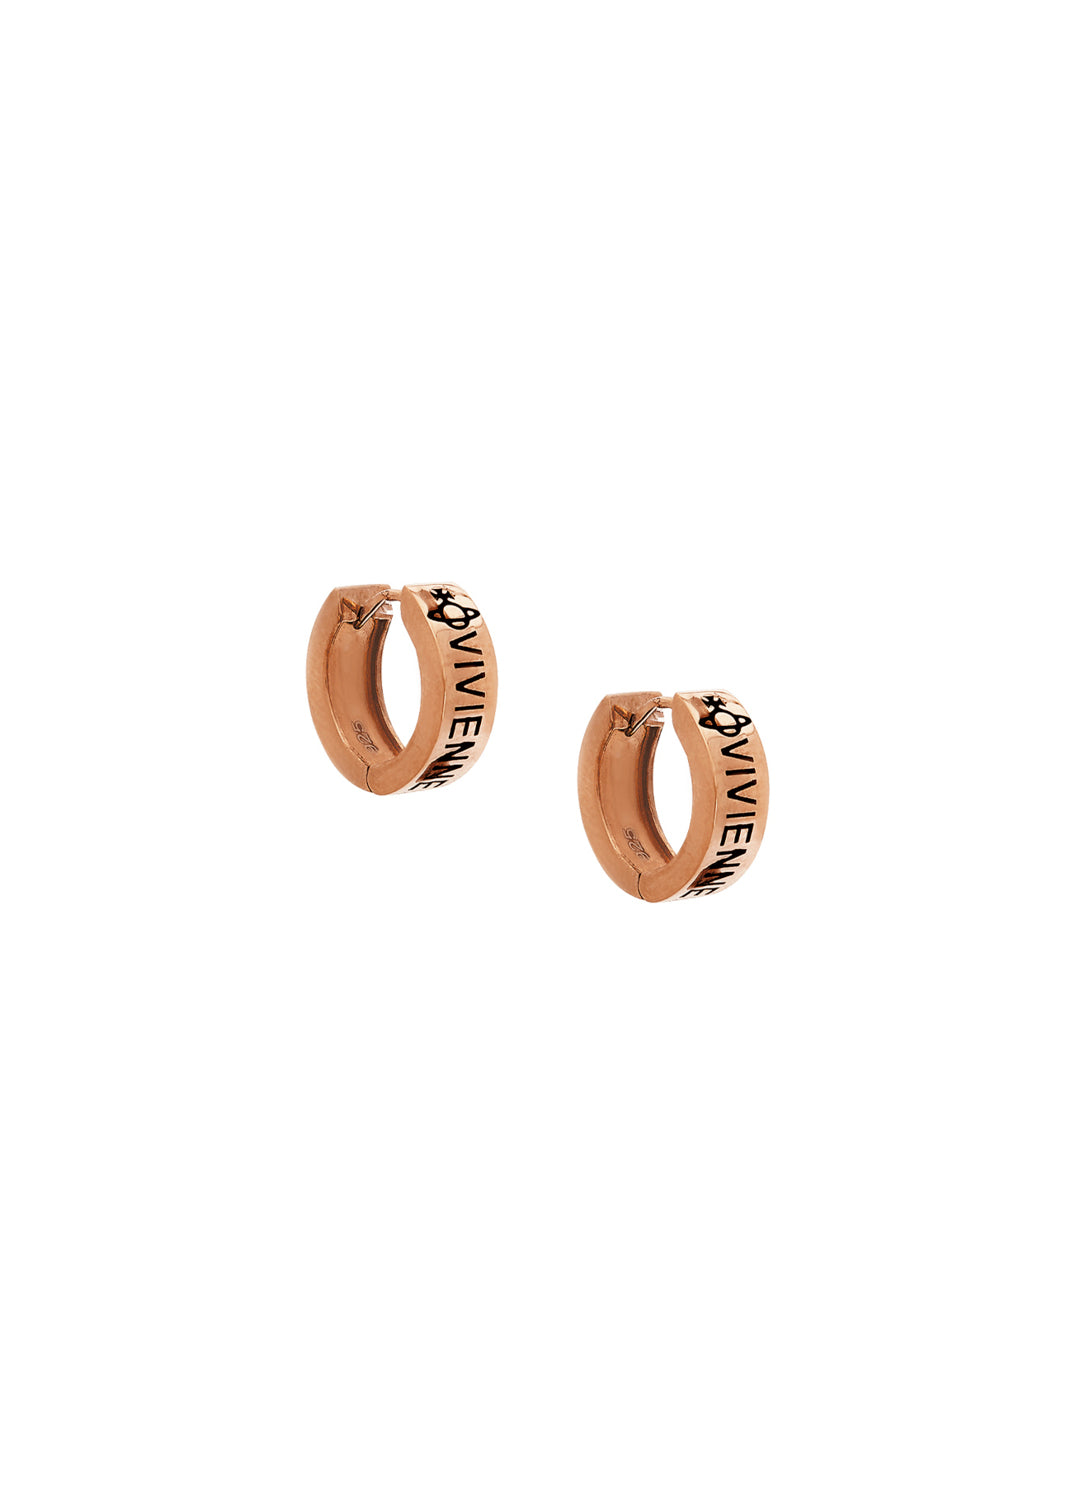 Sammie Earrings - Rose Gold - 6203007U-01G001-SM – Sarah Layton